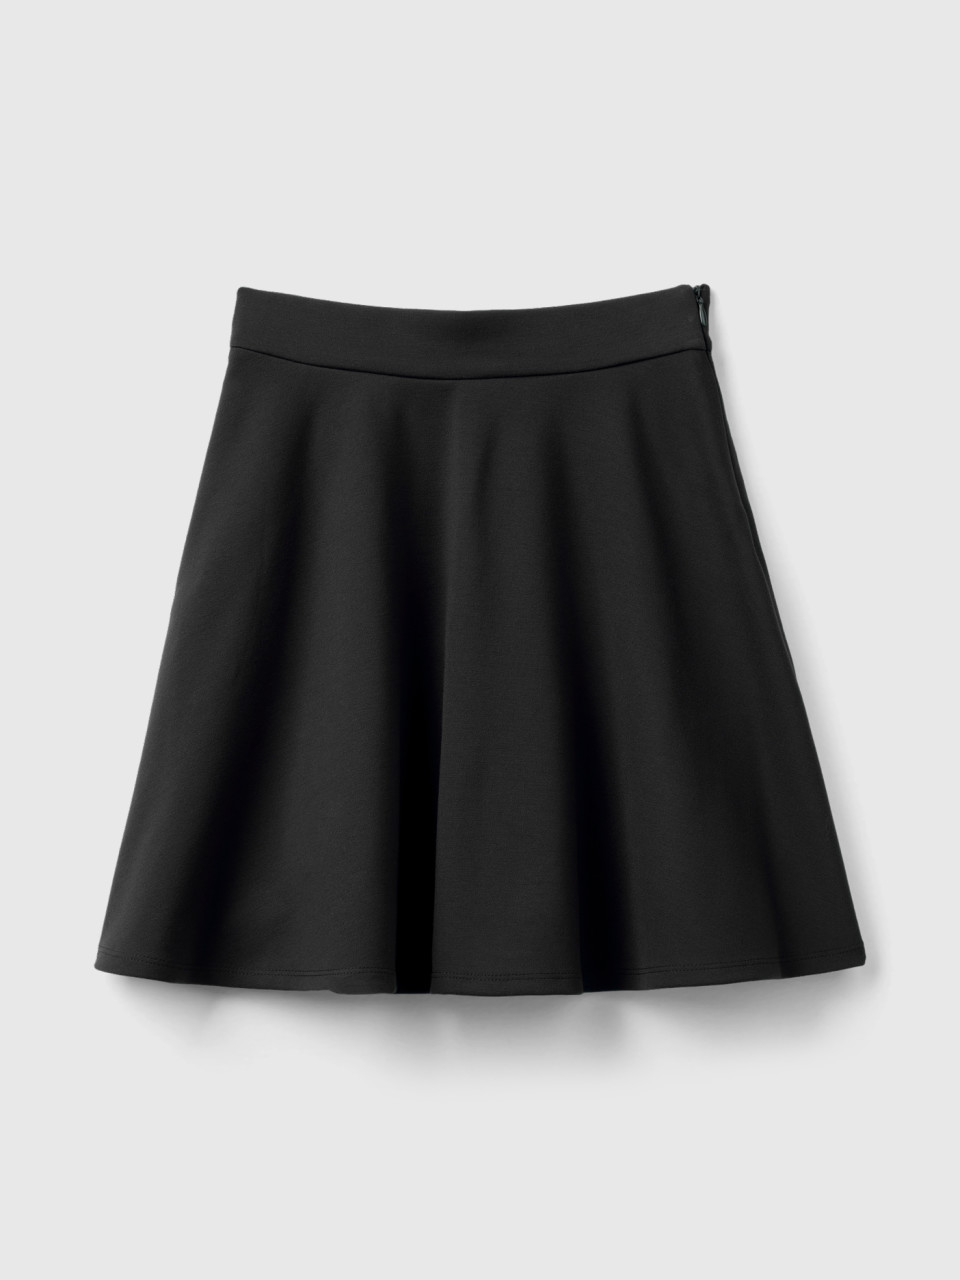 Benetton, Pleated Skirt In Viscose Blend, Black, Kids